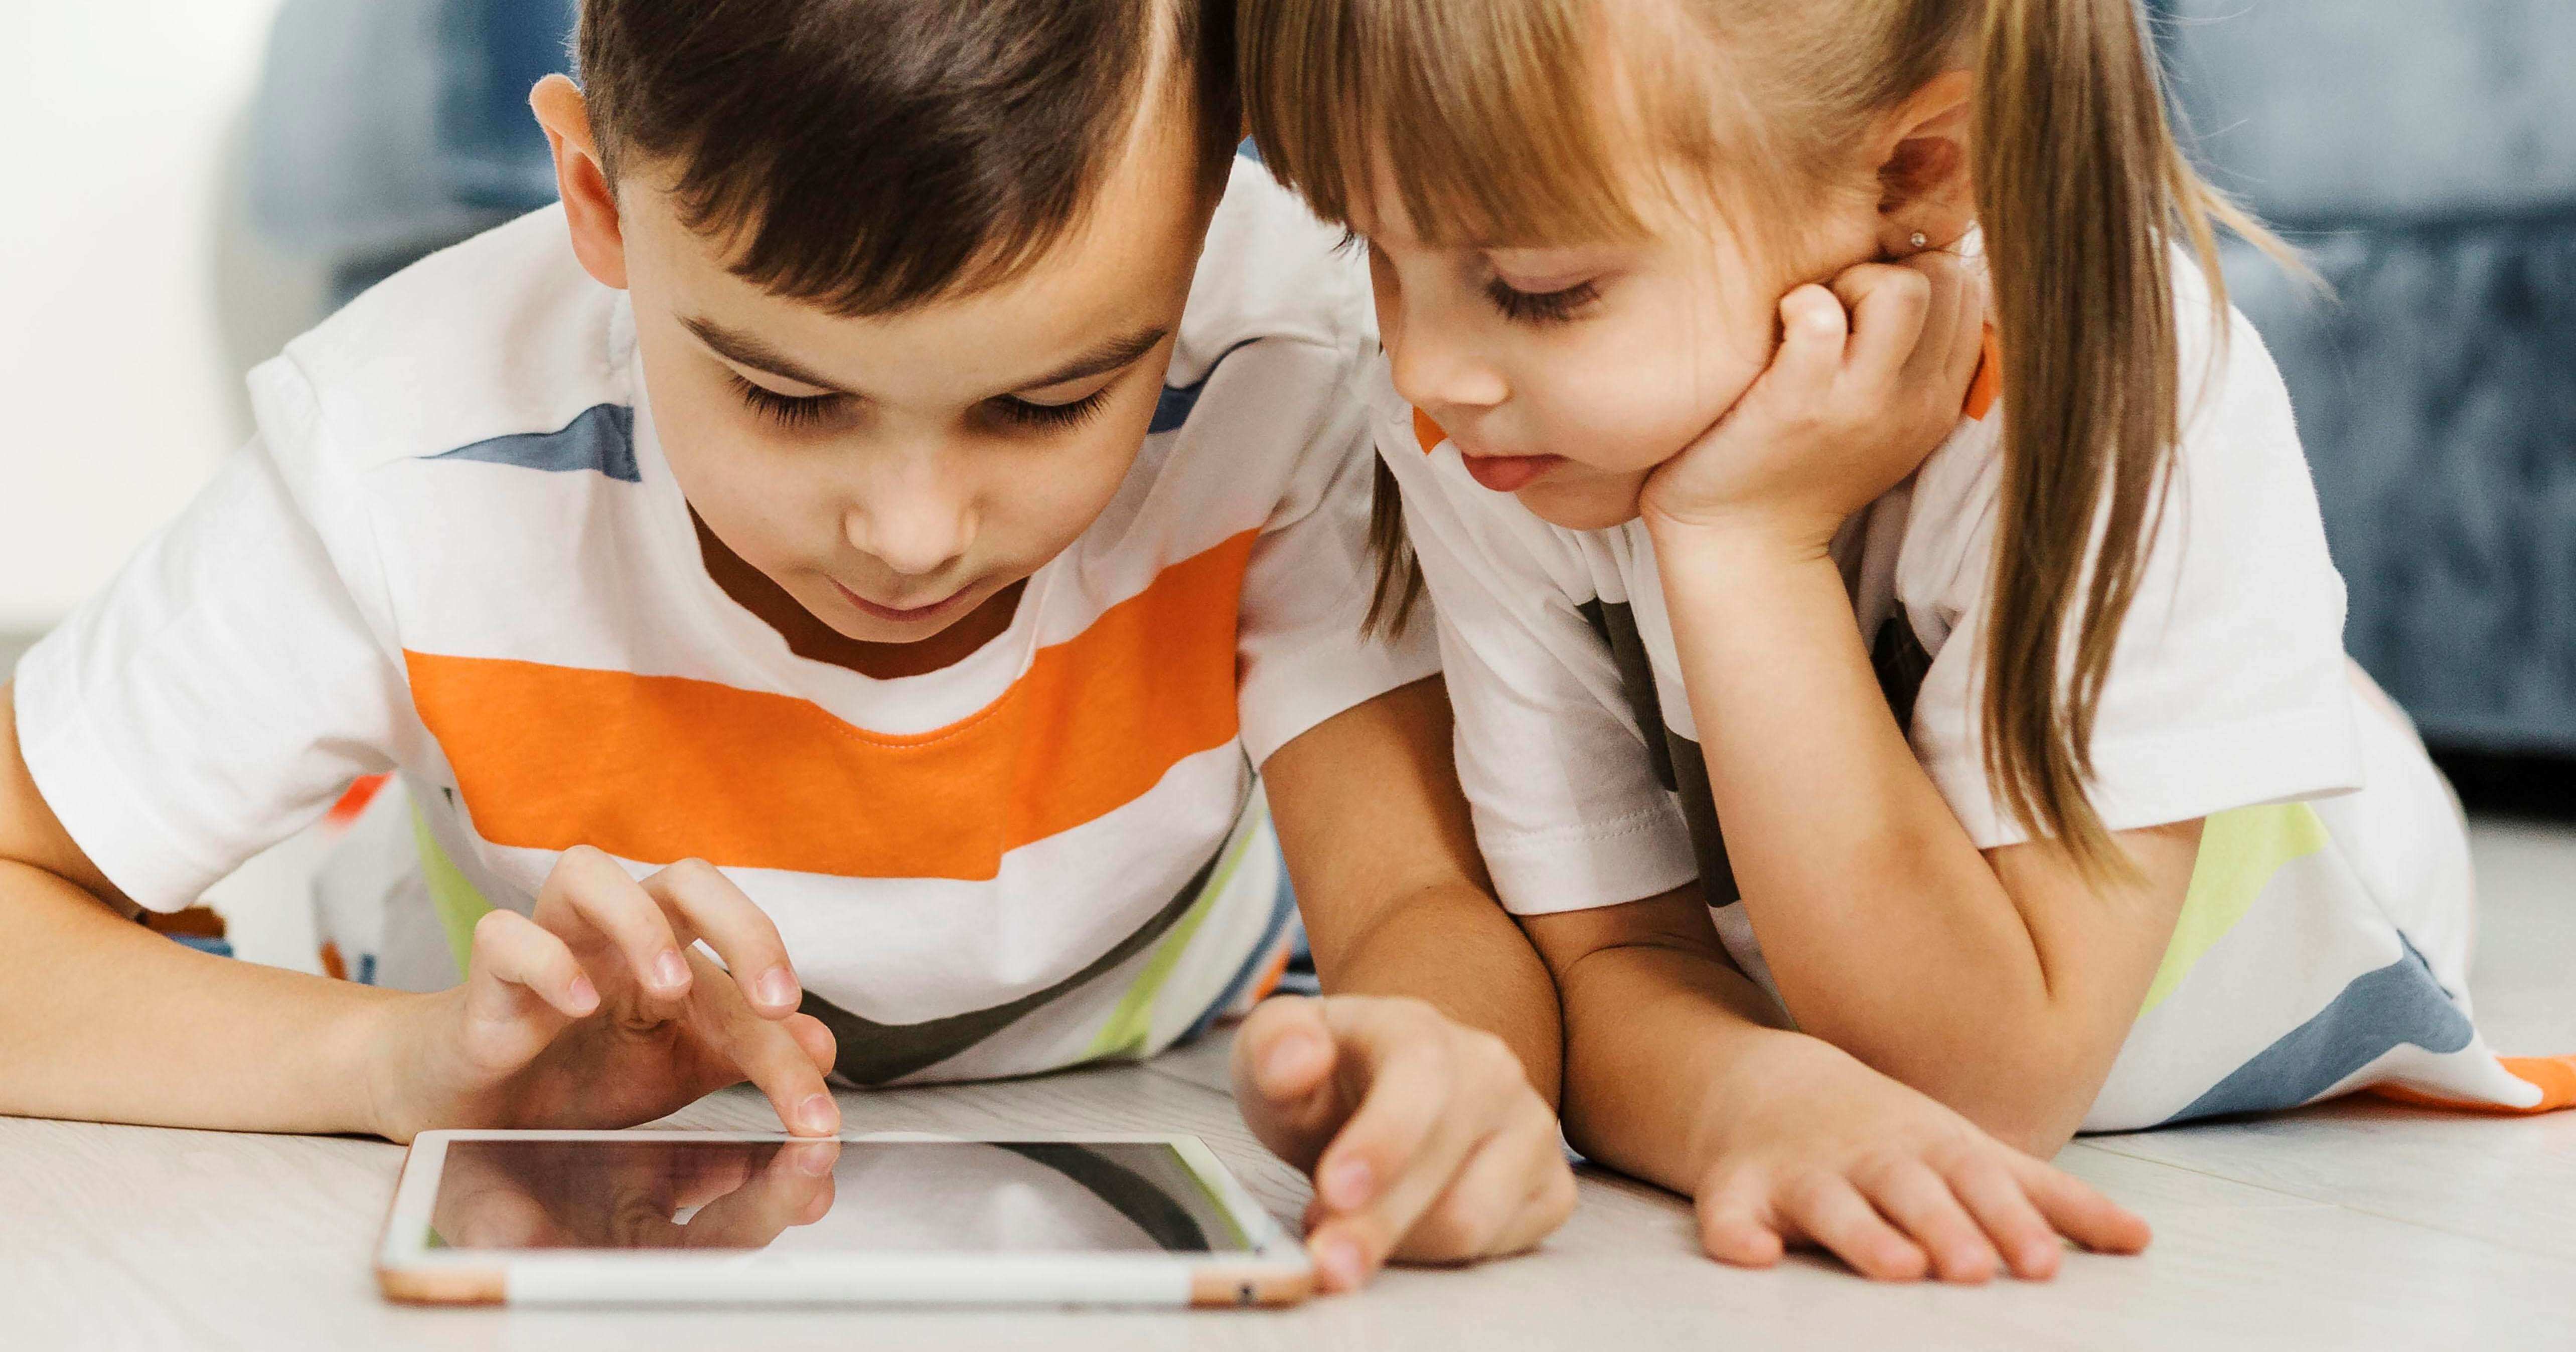 Digitális vs hagyományos játékok: Mikor szociálisabbak a gyerekek?